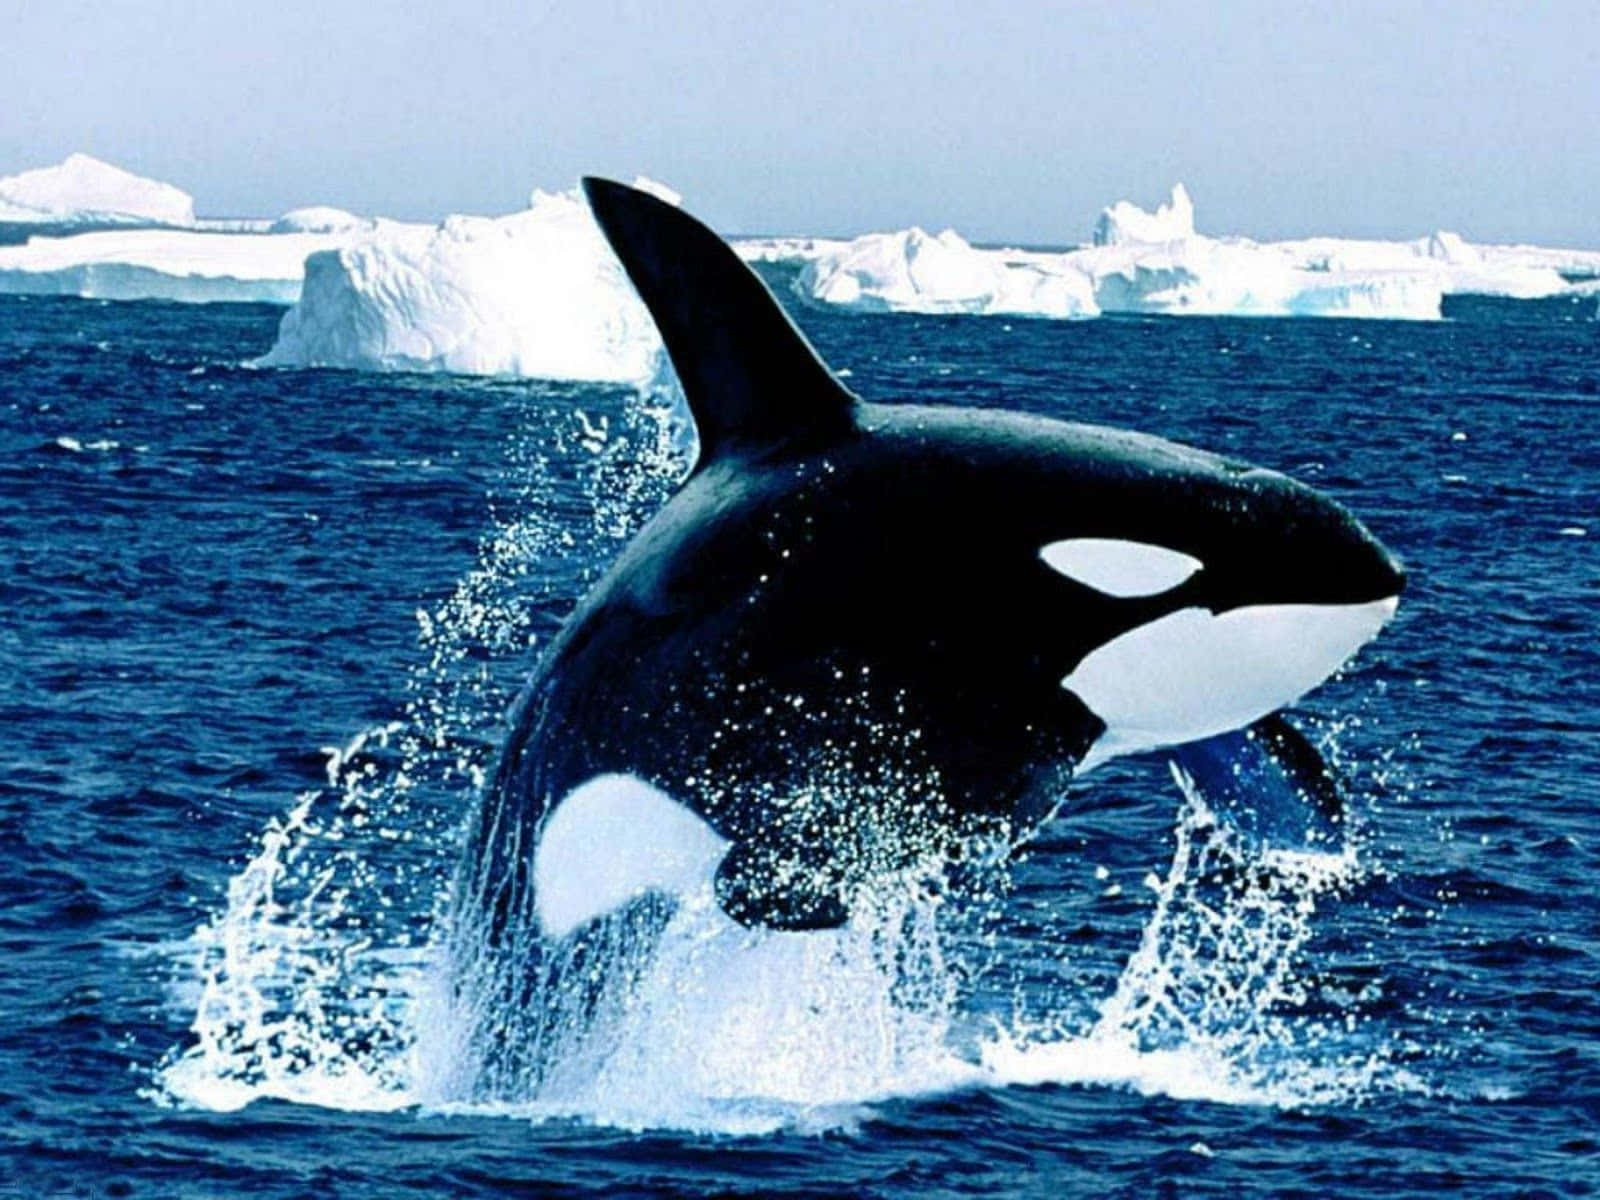 Imagende Una Orca Ballena Asesina En La Antártida.